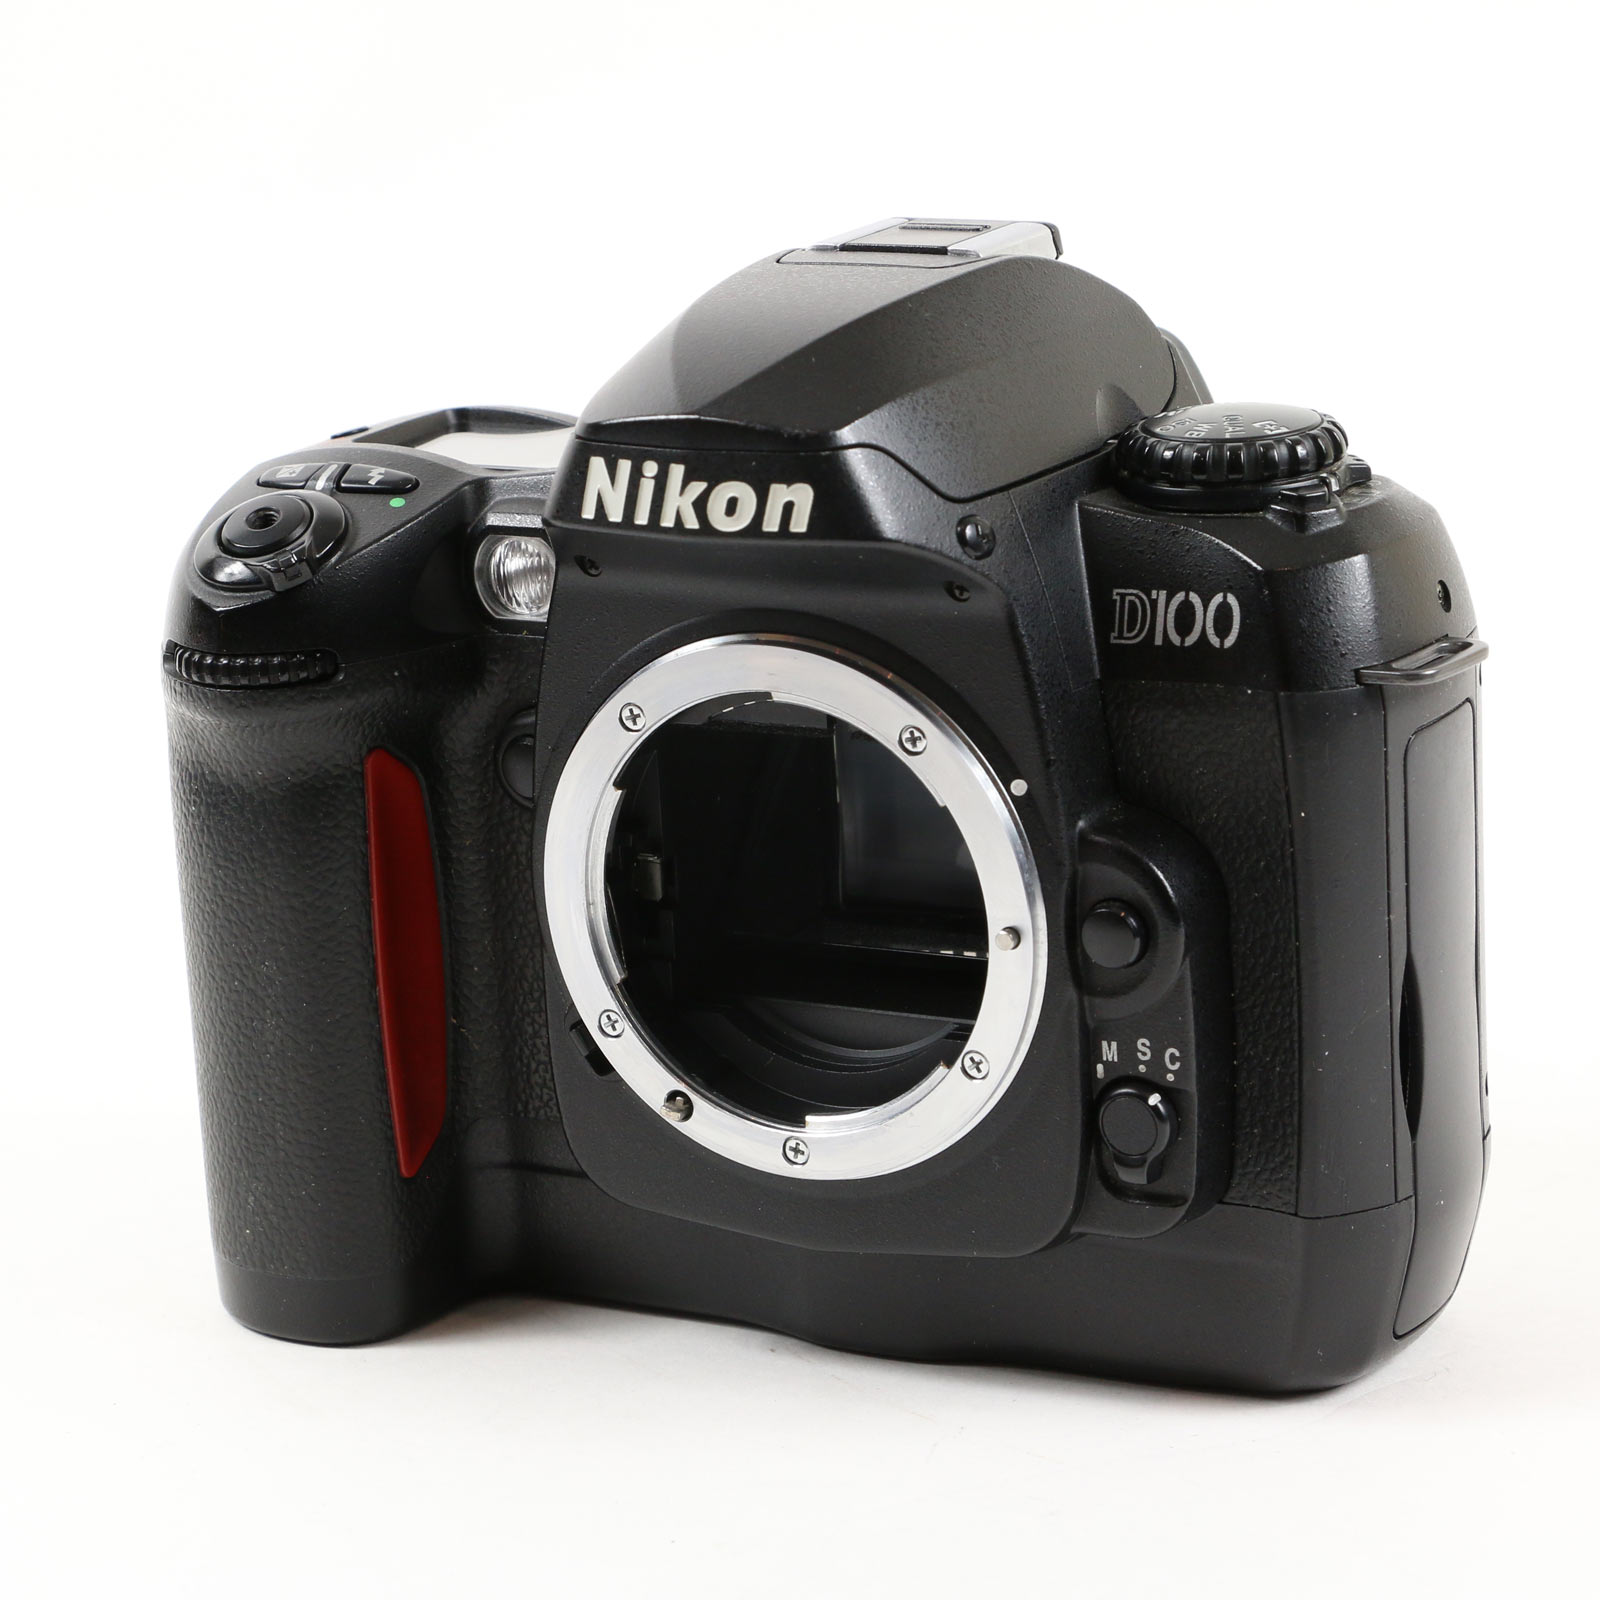 USED Nikon D100 Digital SLR Camera Body